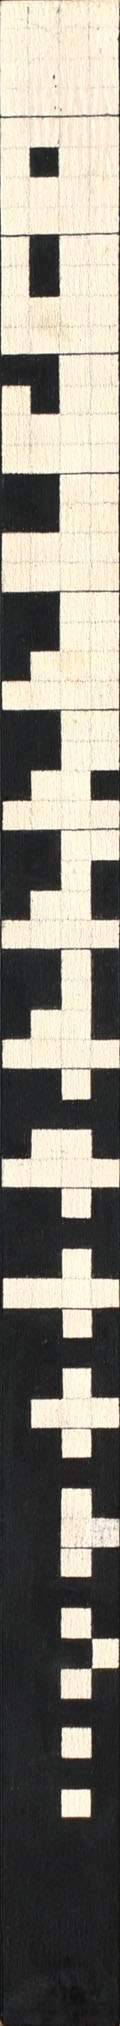 Ryszard Winiarski (1936 Lwów - 2006 Warszawa), Order vertical game 4 x 4, 1981